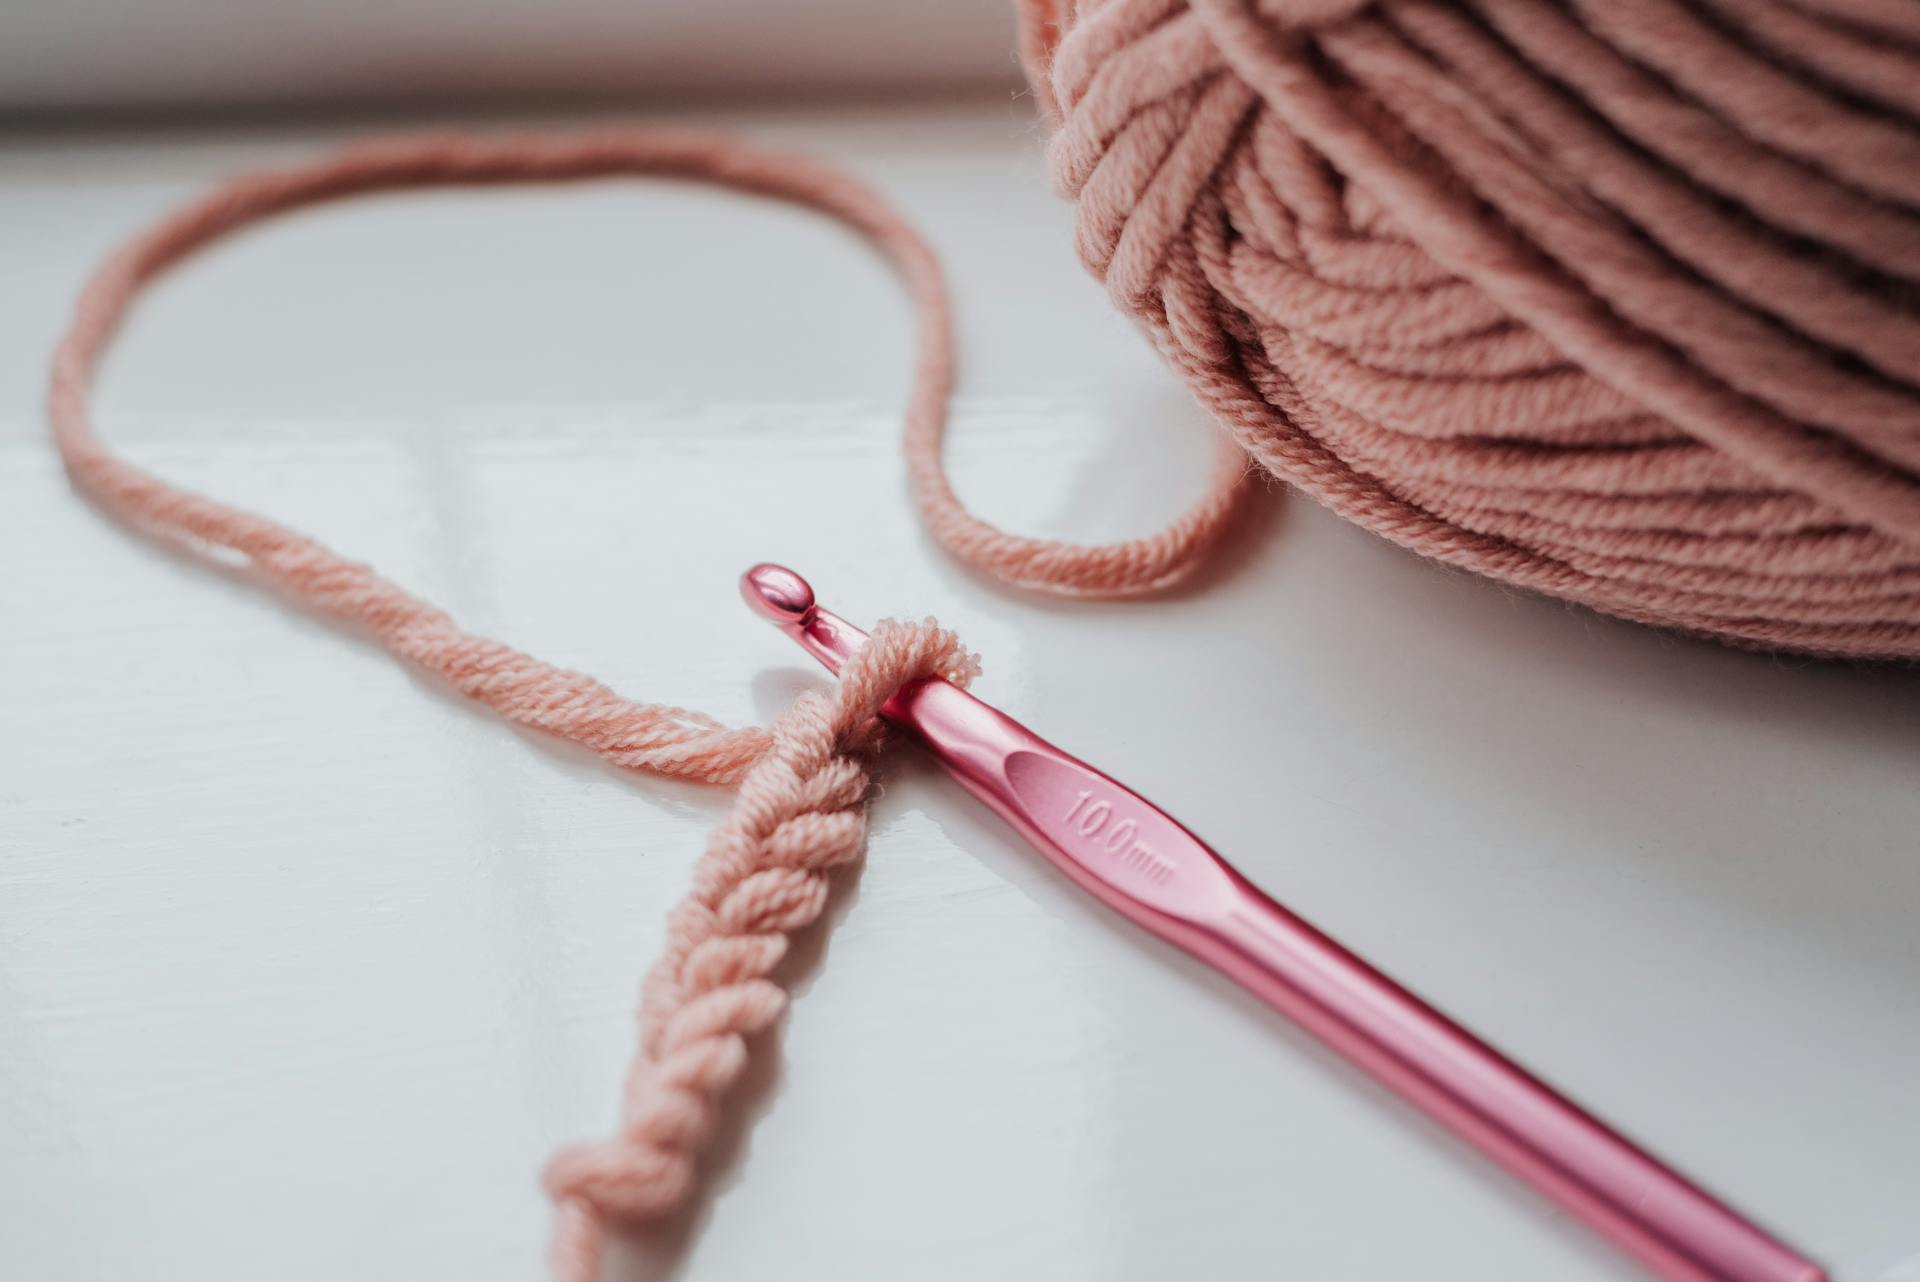 Une pièce tricotée et un fil avec un crochet | Source : Pexels